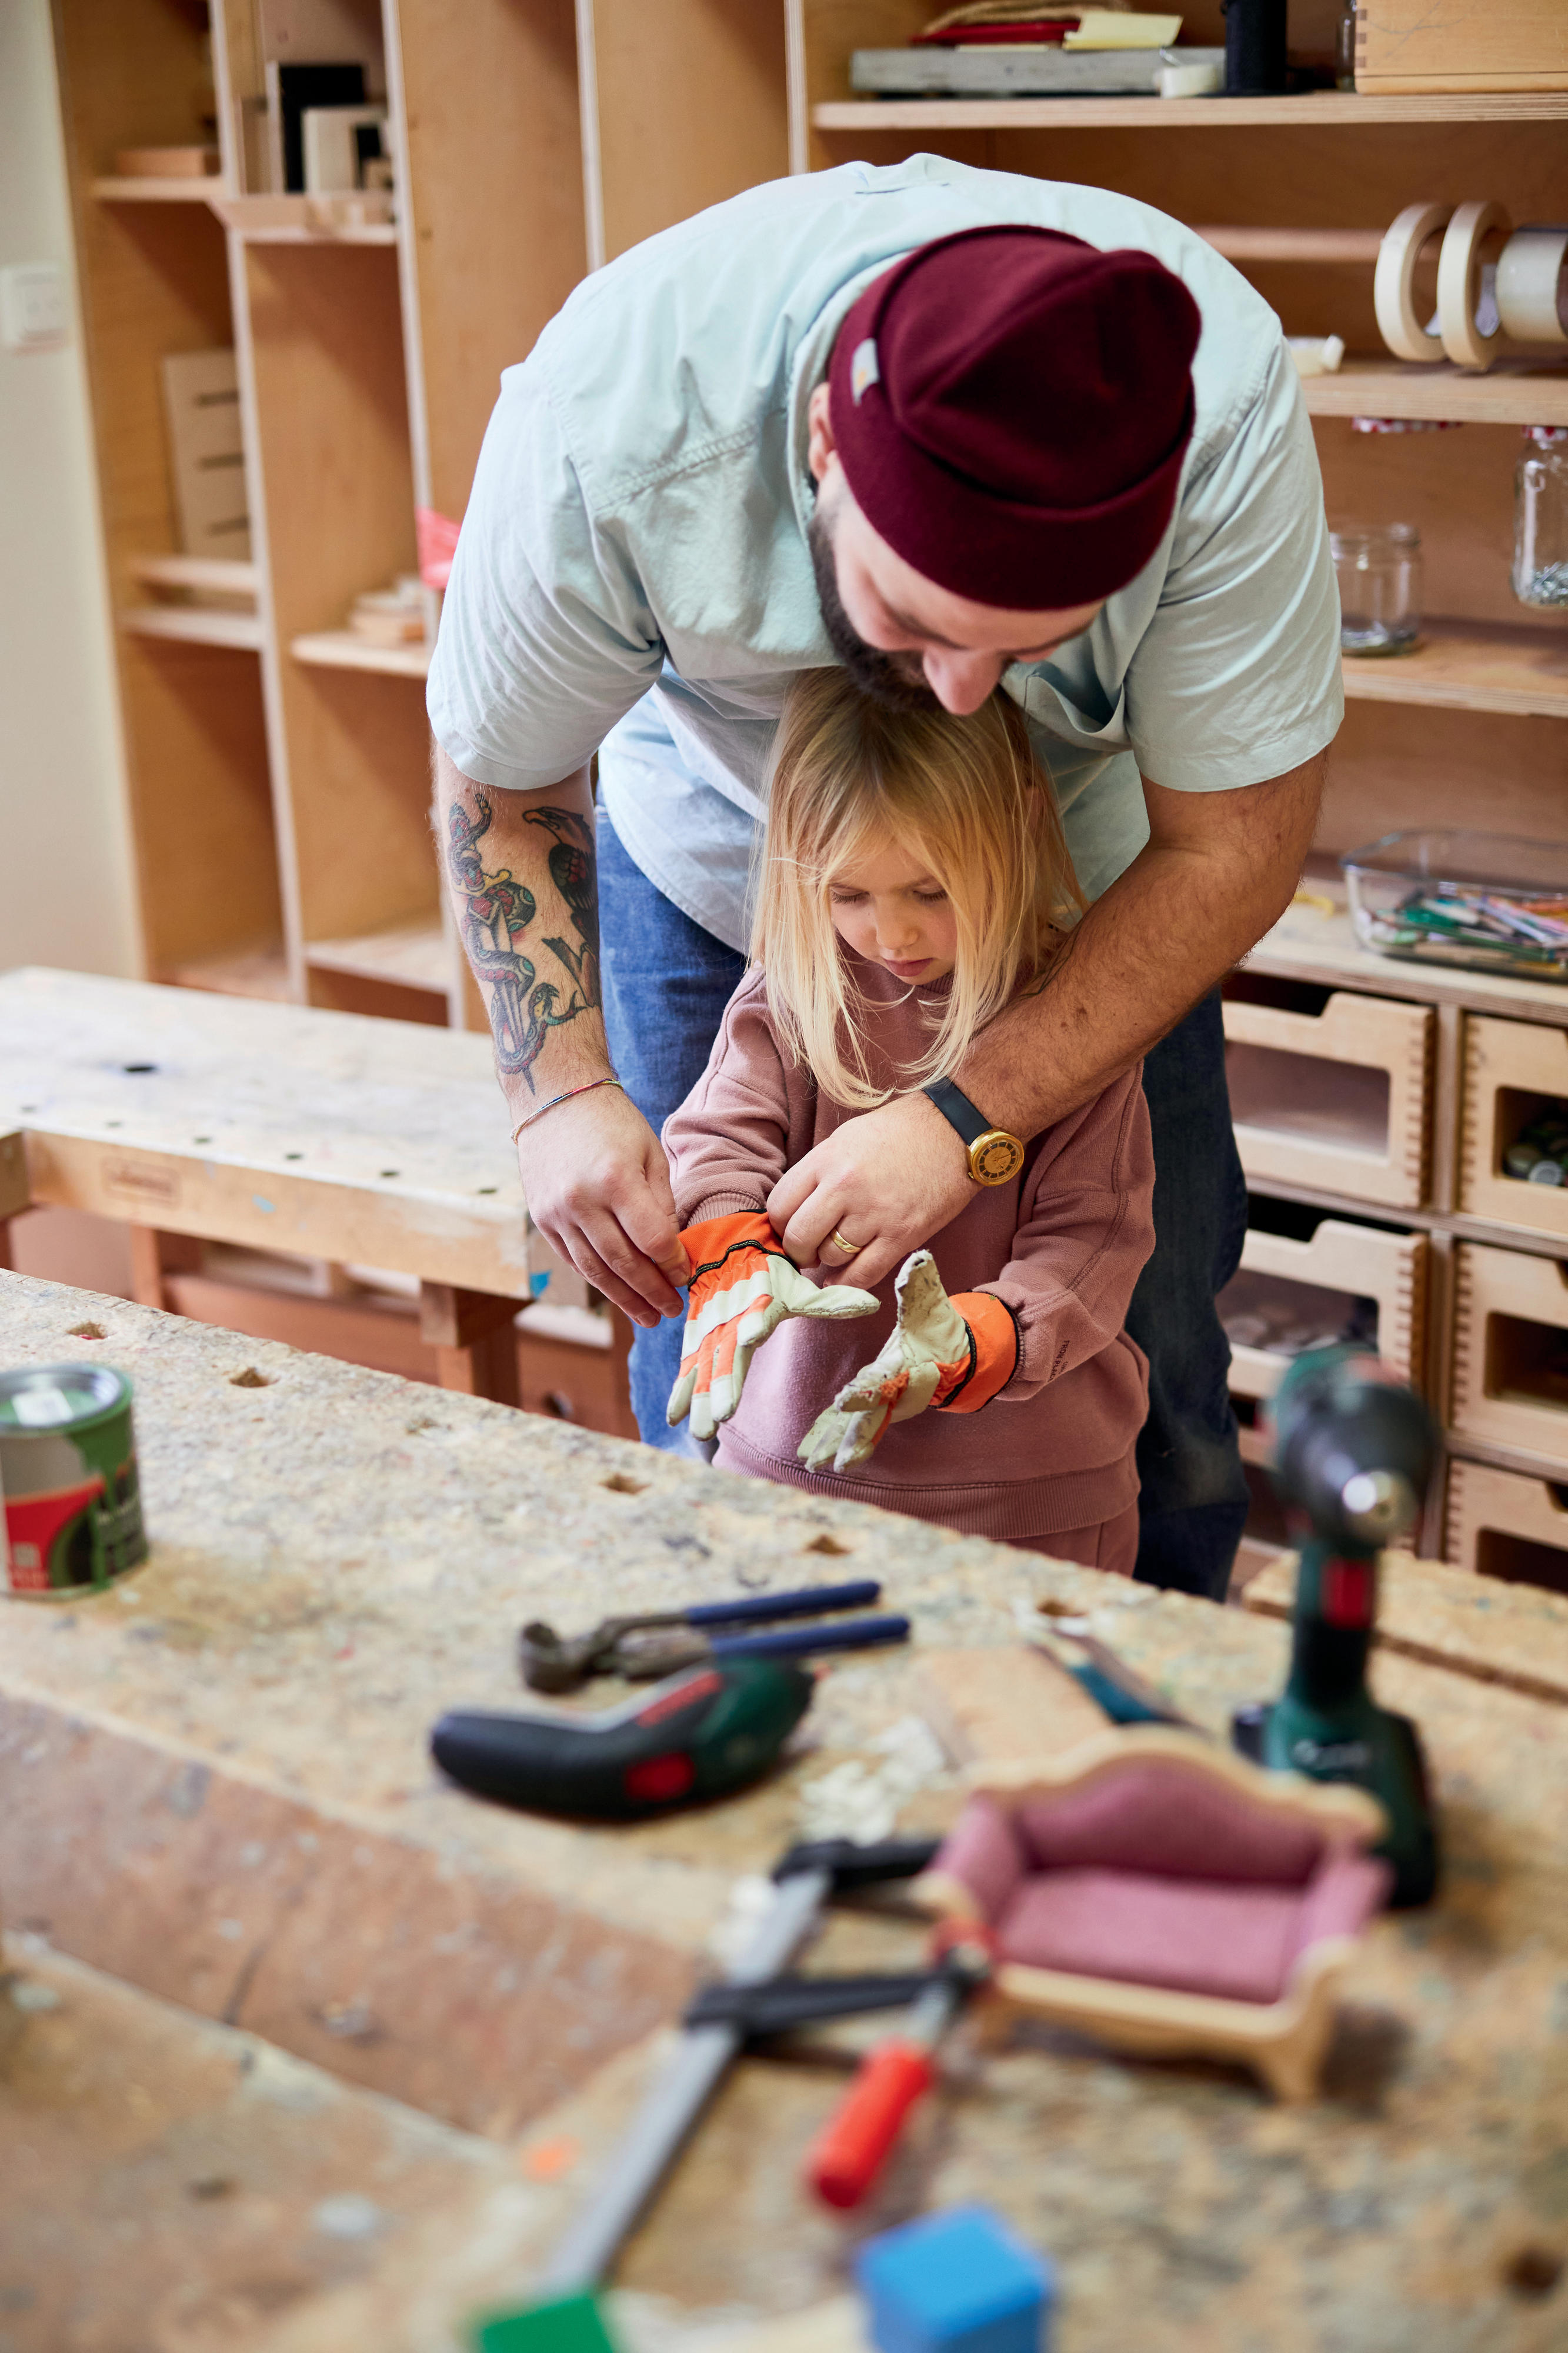 Ein bärtiger Mann mit Wollmütze und Tattoo am Arm hilft einem kleinen Mädchen Arbeitshandschuhe anzuziehen.